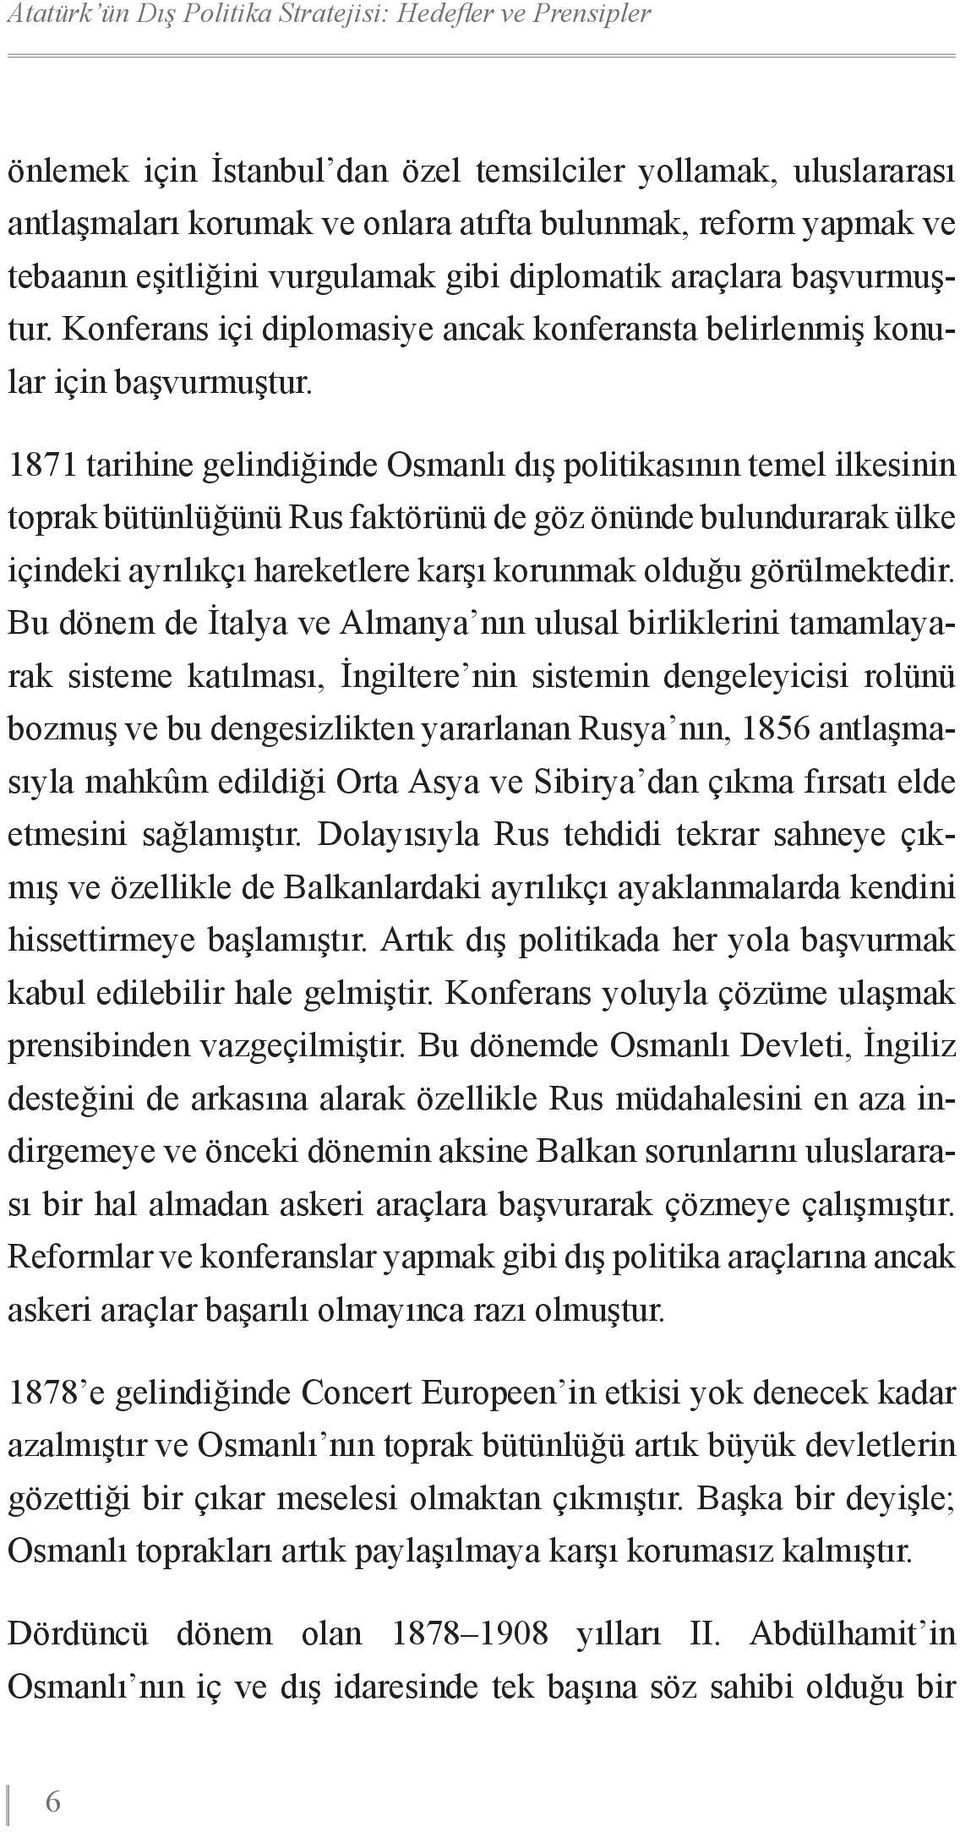 1871 tarihine gelindiğinde Osmanlı dış politikasının temel ilkesinin toprak bütünlüğünü Rus faktörünü de göz önünde bulundurarak ülke içindeki ayrılıkçı hareketlere karşı korunmak olduğu